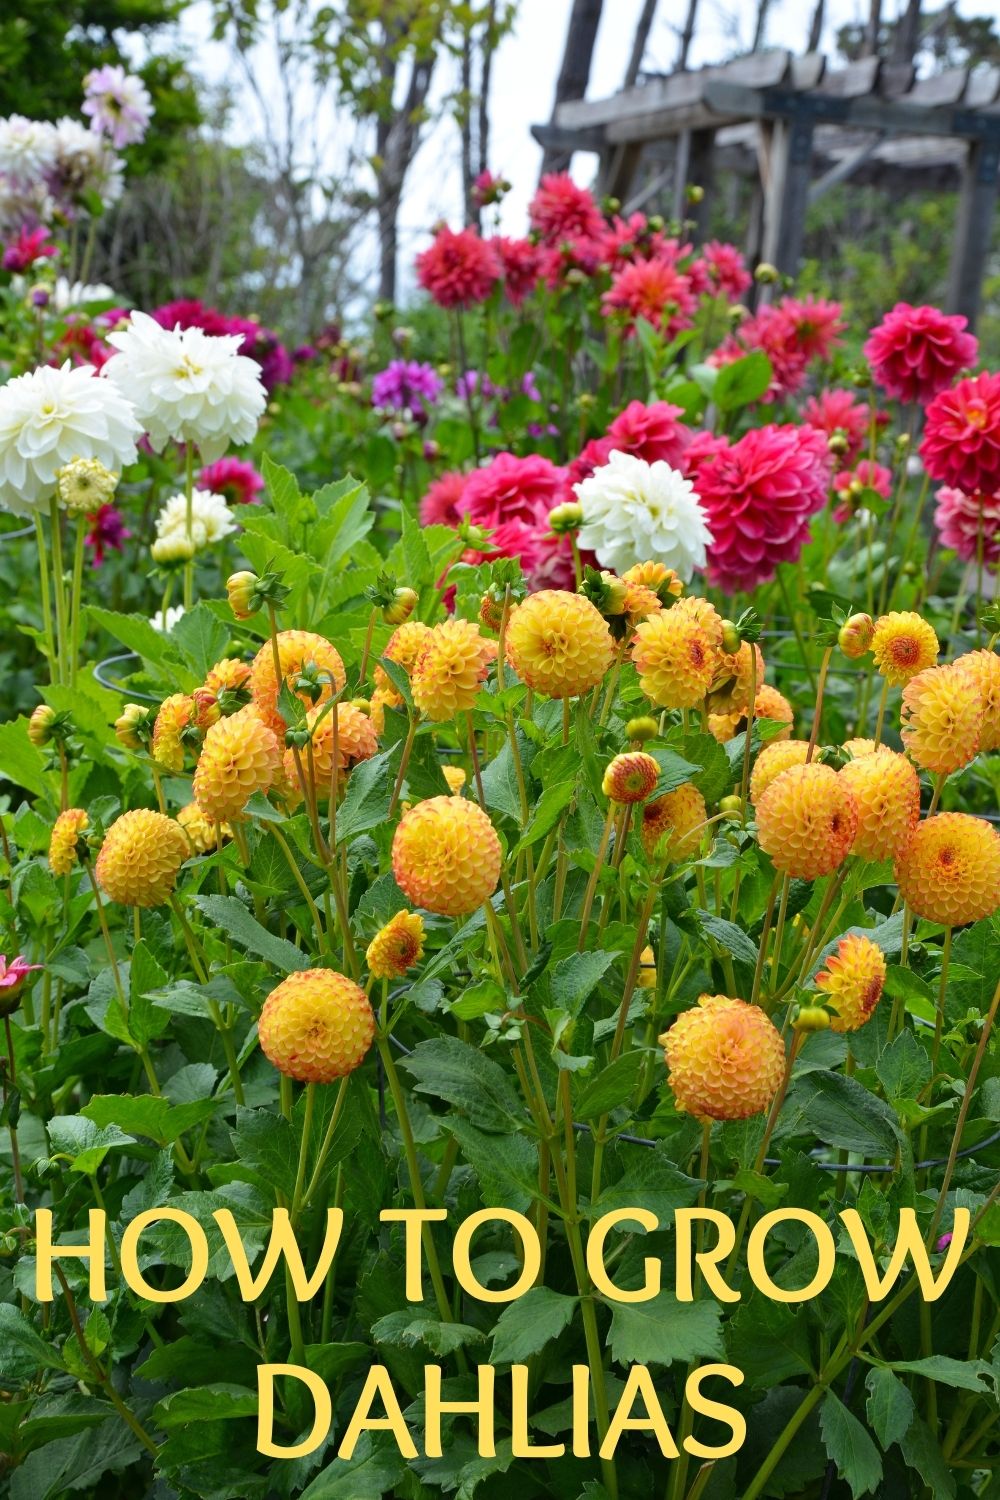 How to grow dahlias